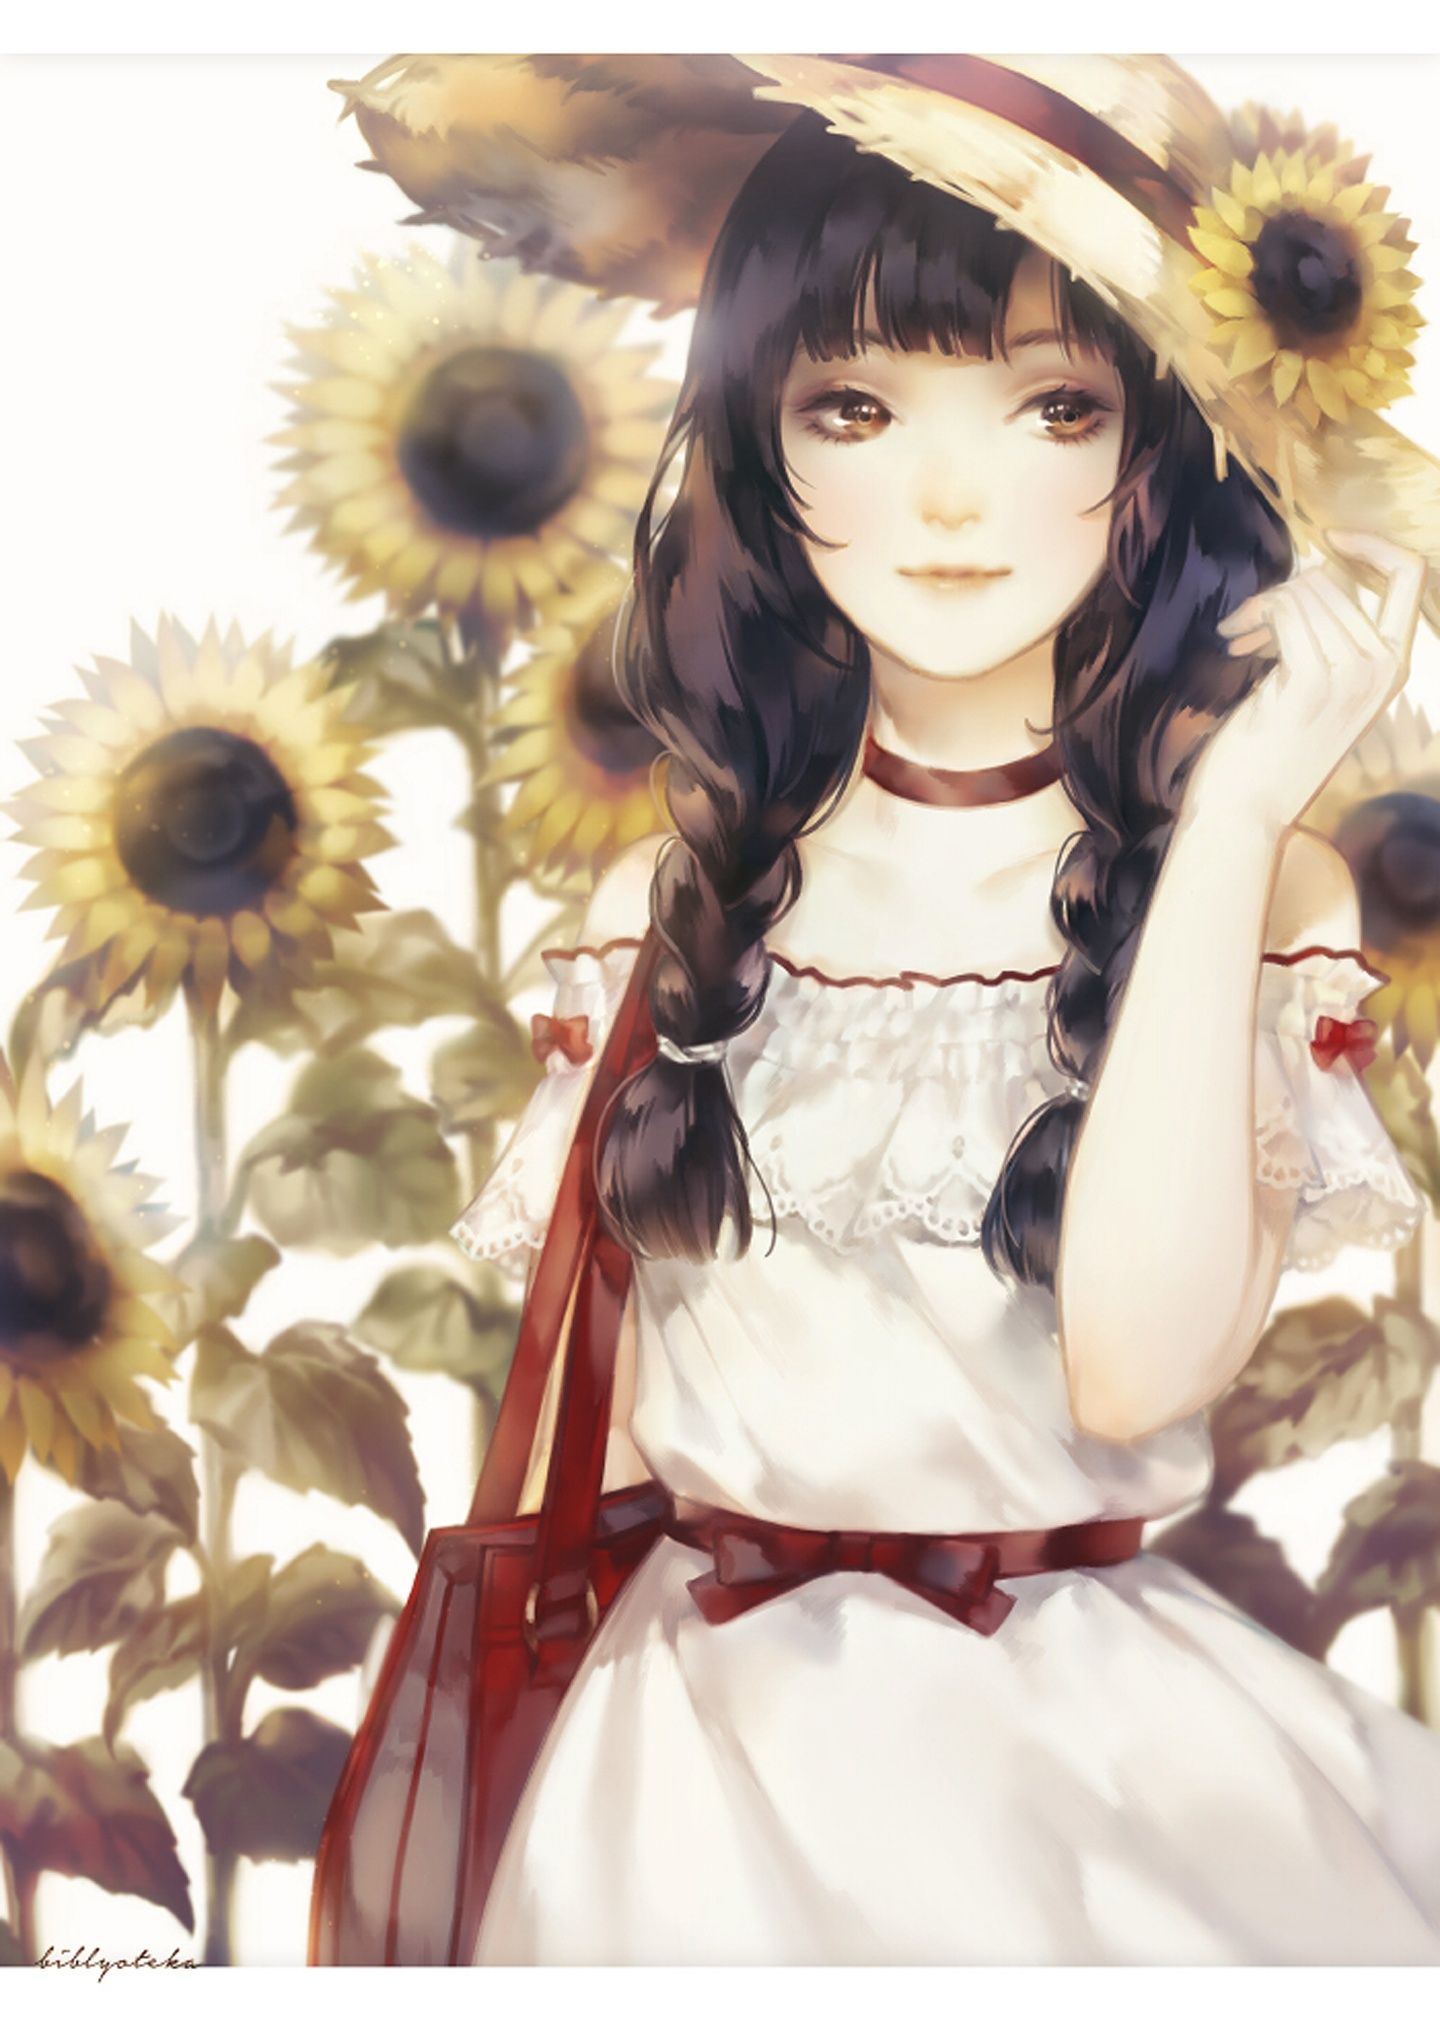 Anime Sunflower Wallpaper